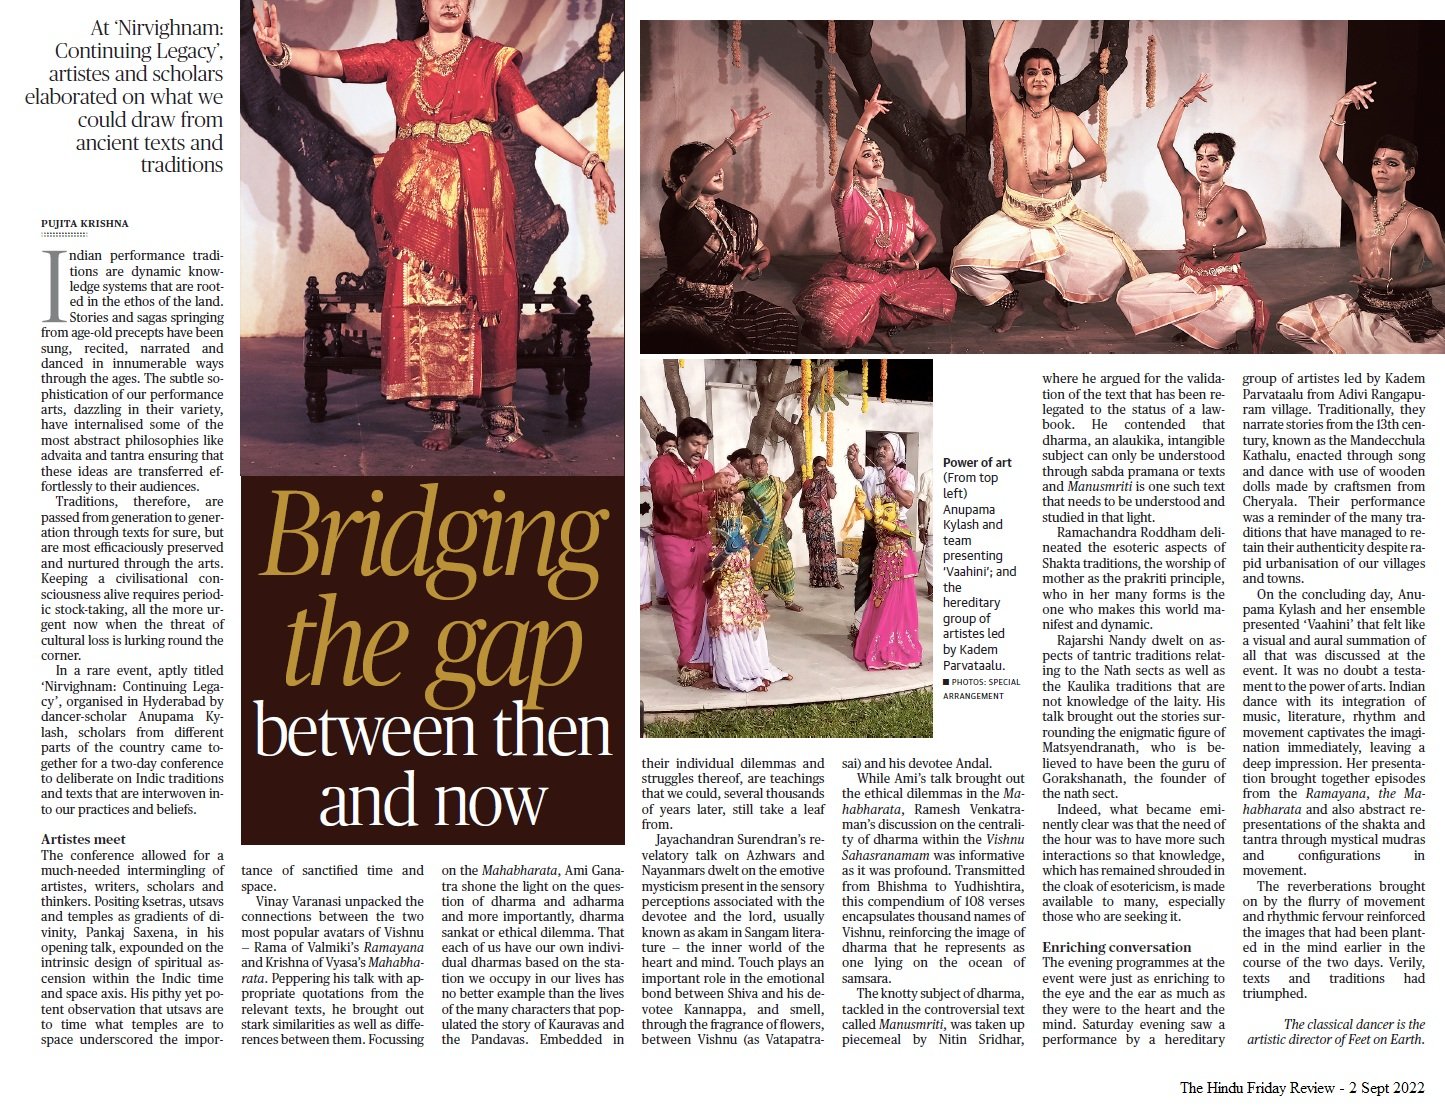 Bridging the gap between then and now - Pujita Krishna